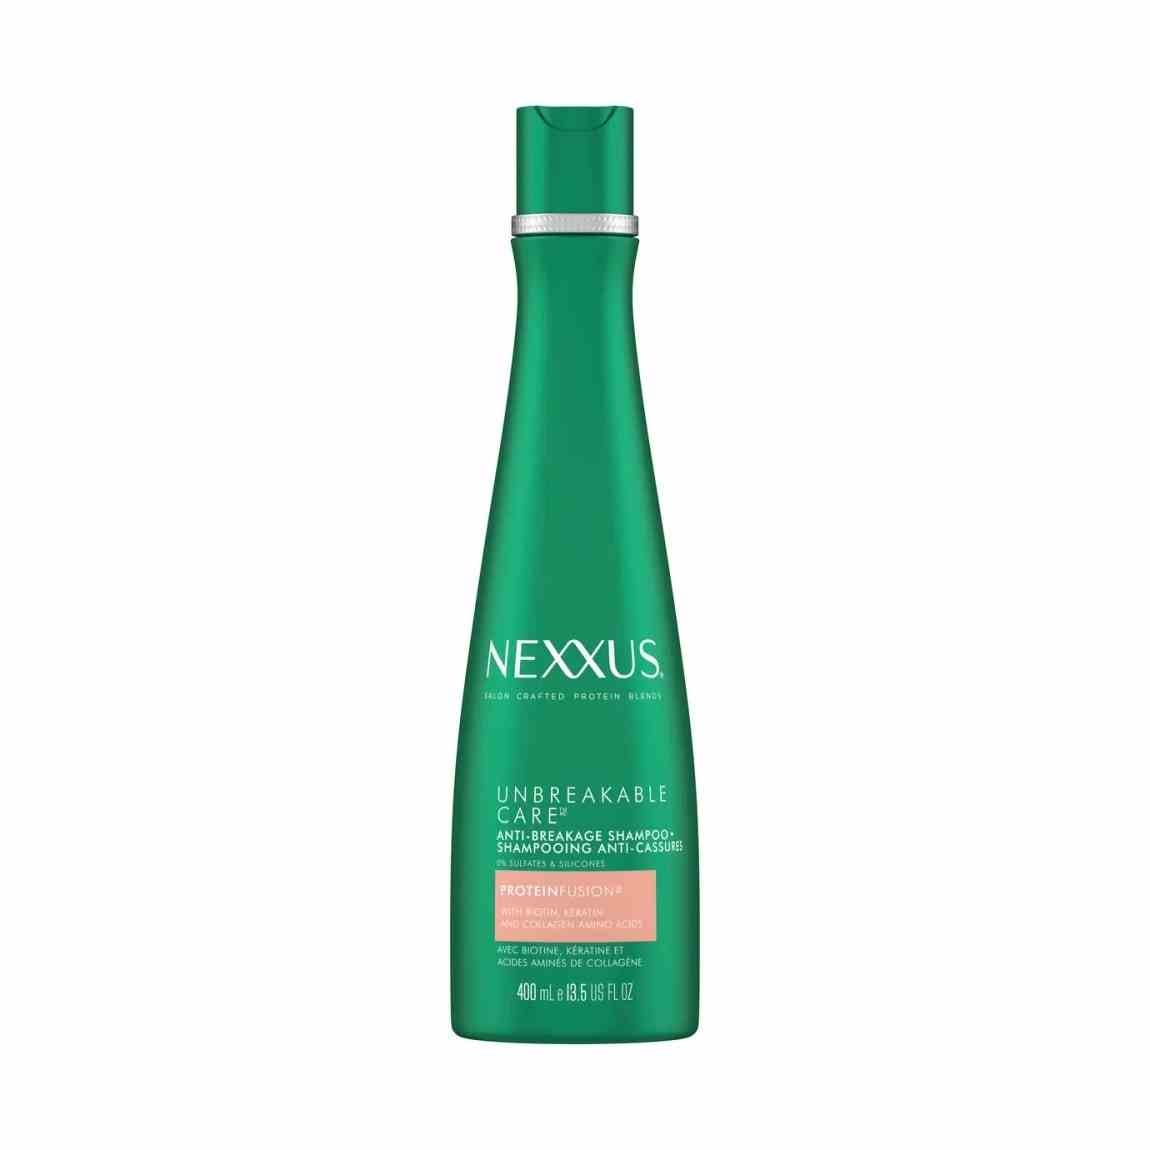 Nexxus Unbreakable Care Anti-Breakage Shampoo grüne Flasche auf weißem Hintergrund